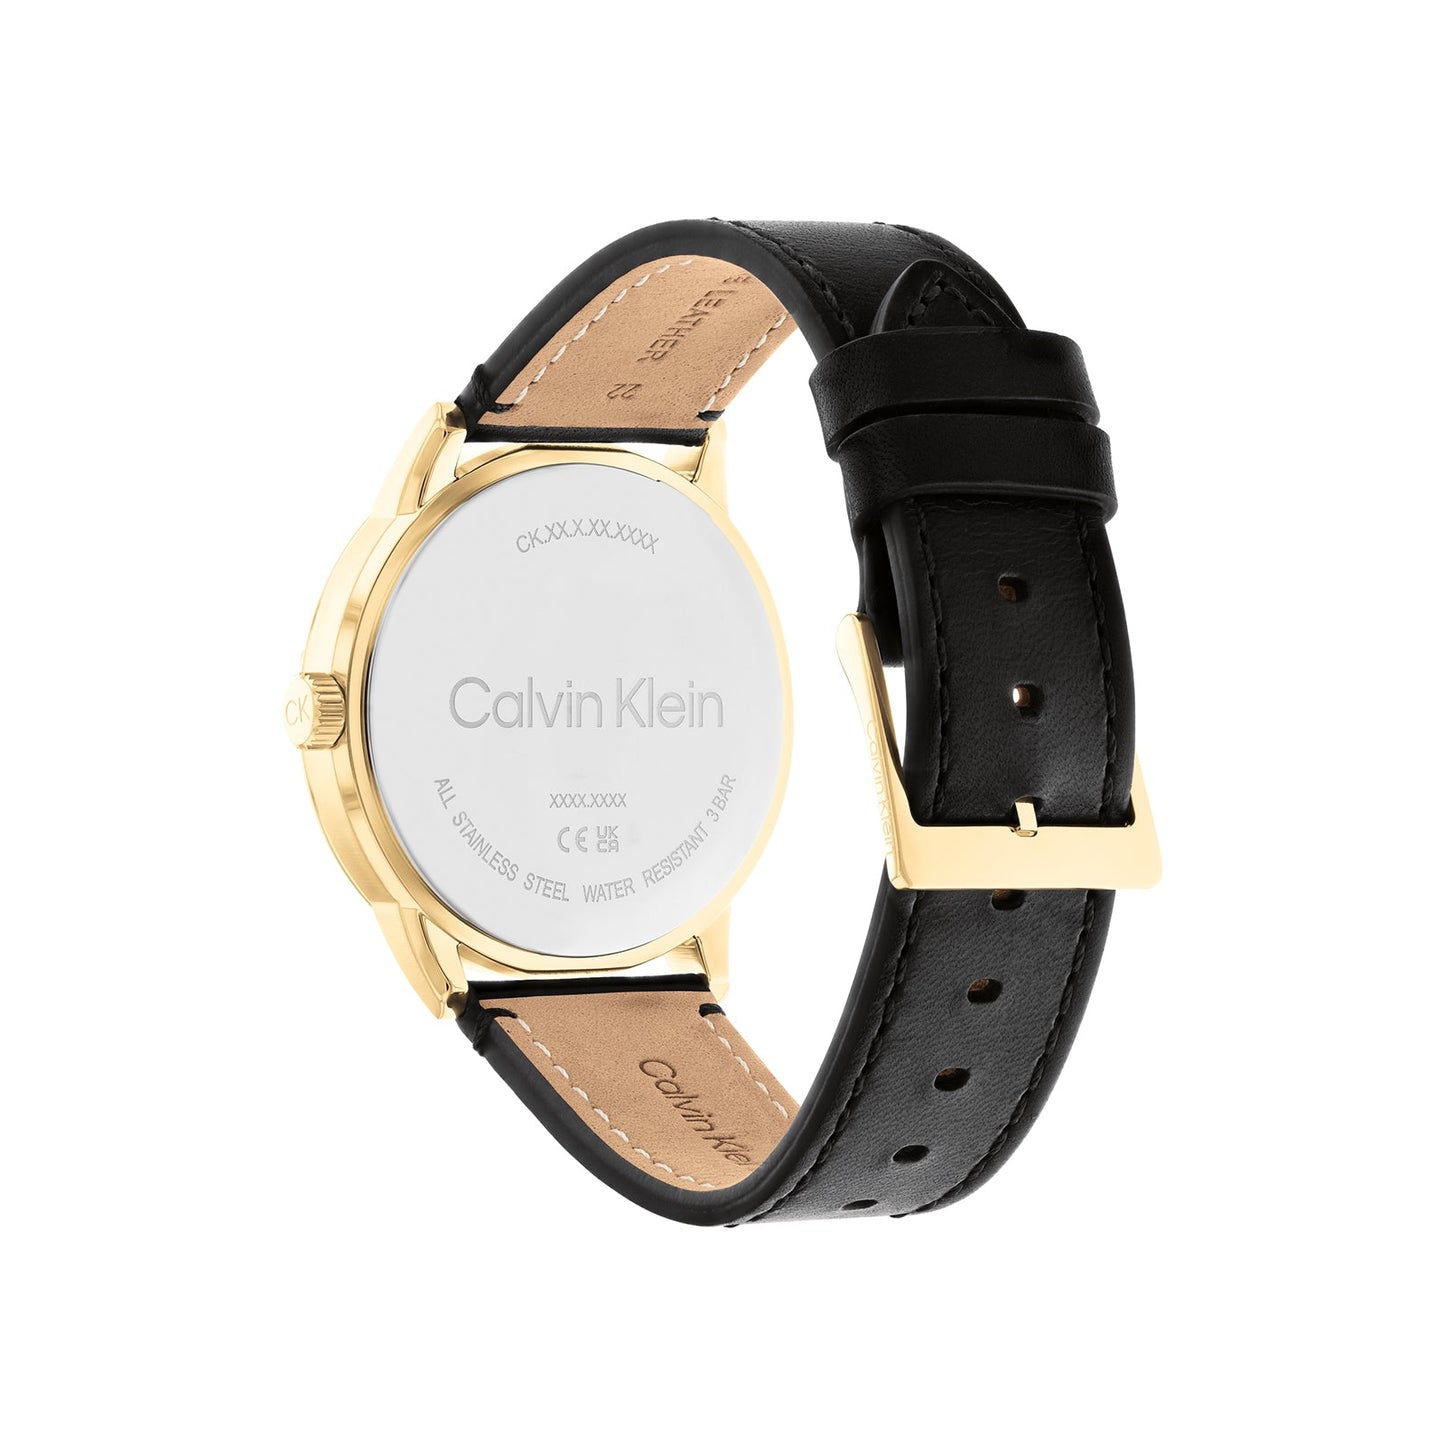 Calvin Klein 25200217 Men's Leather Watch